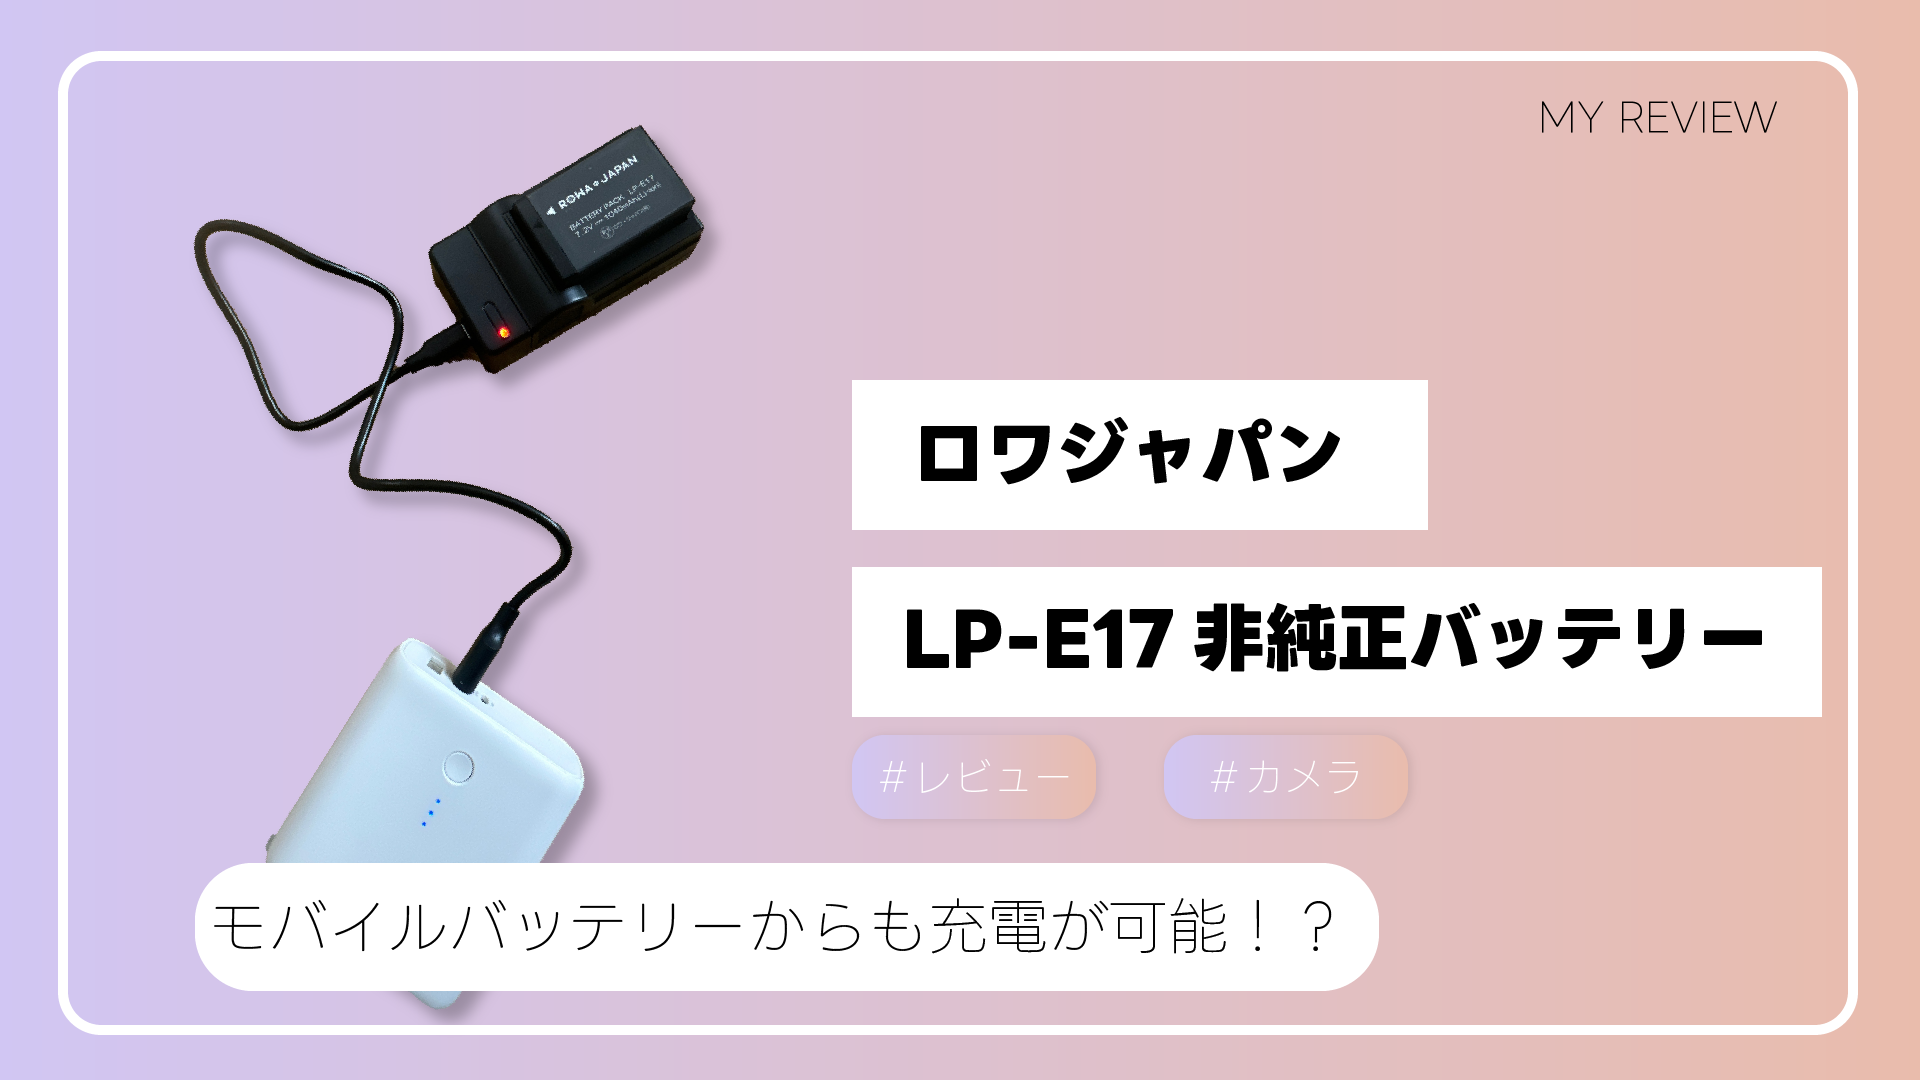 【<strong>LP-E17</strong>】モバイルバッテリーからでもカメラの充電ができるロワジャパンの充電器を購入してみた。